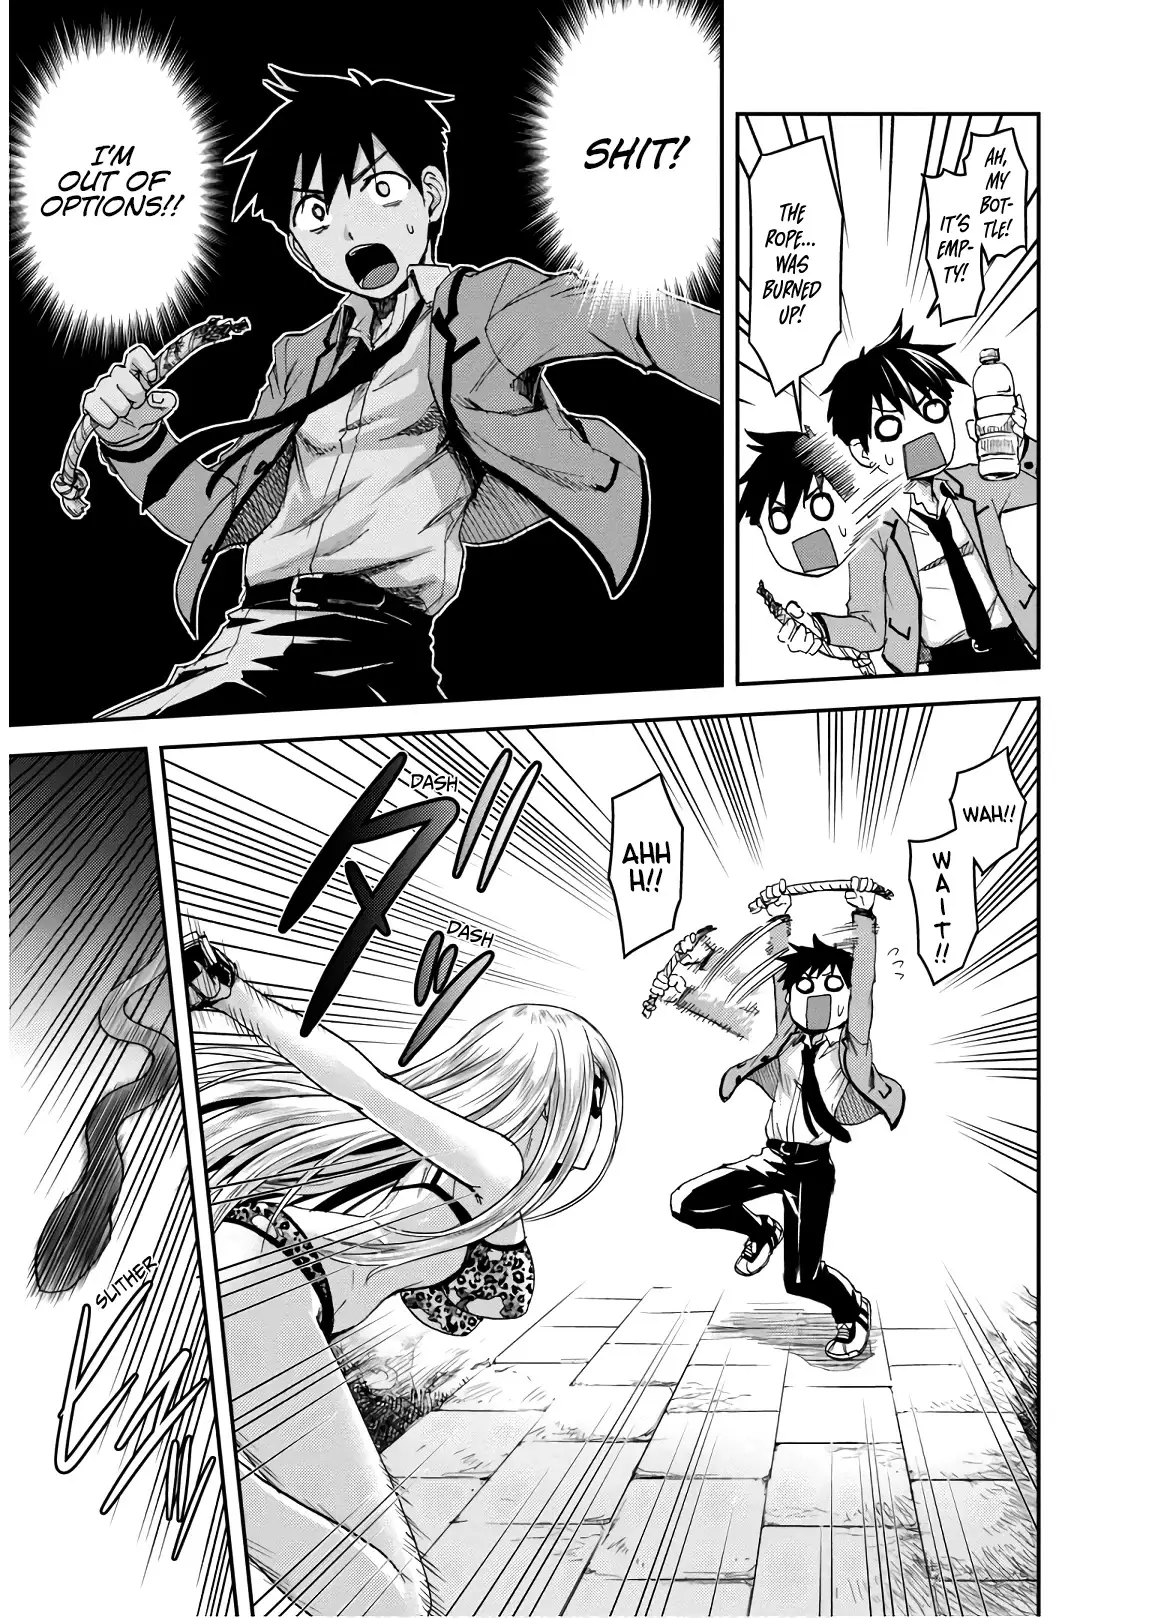 Shinobi Kill - 7 page 3